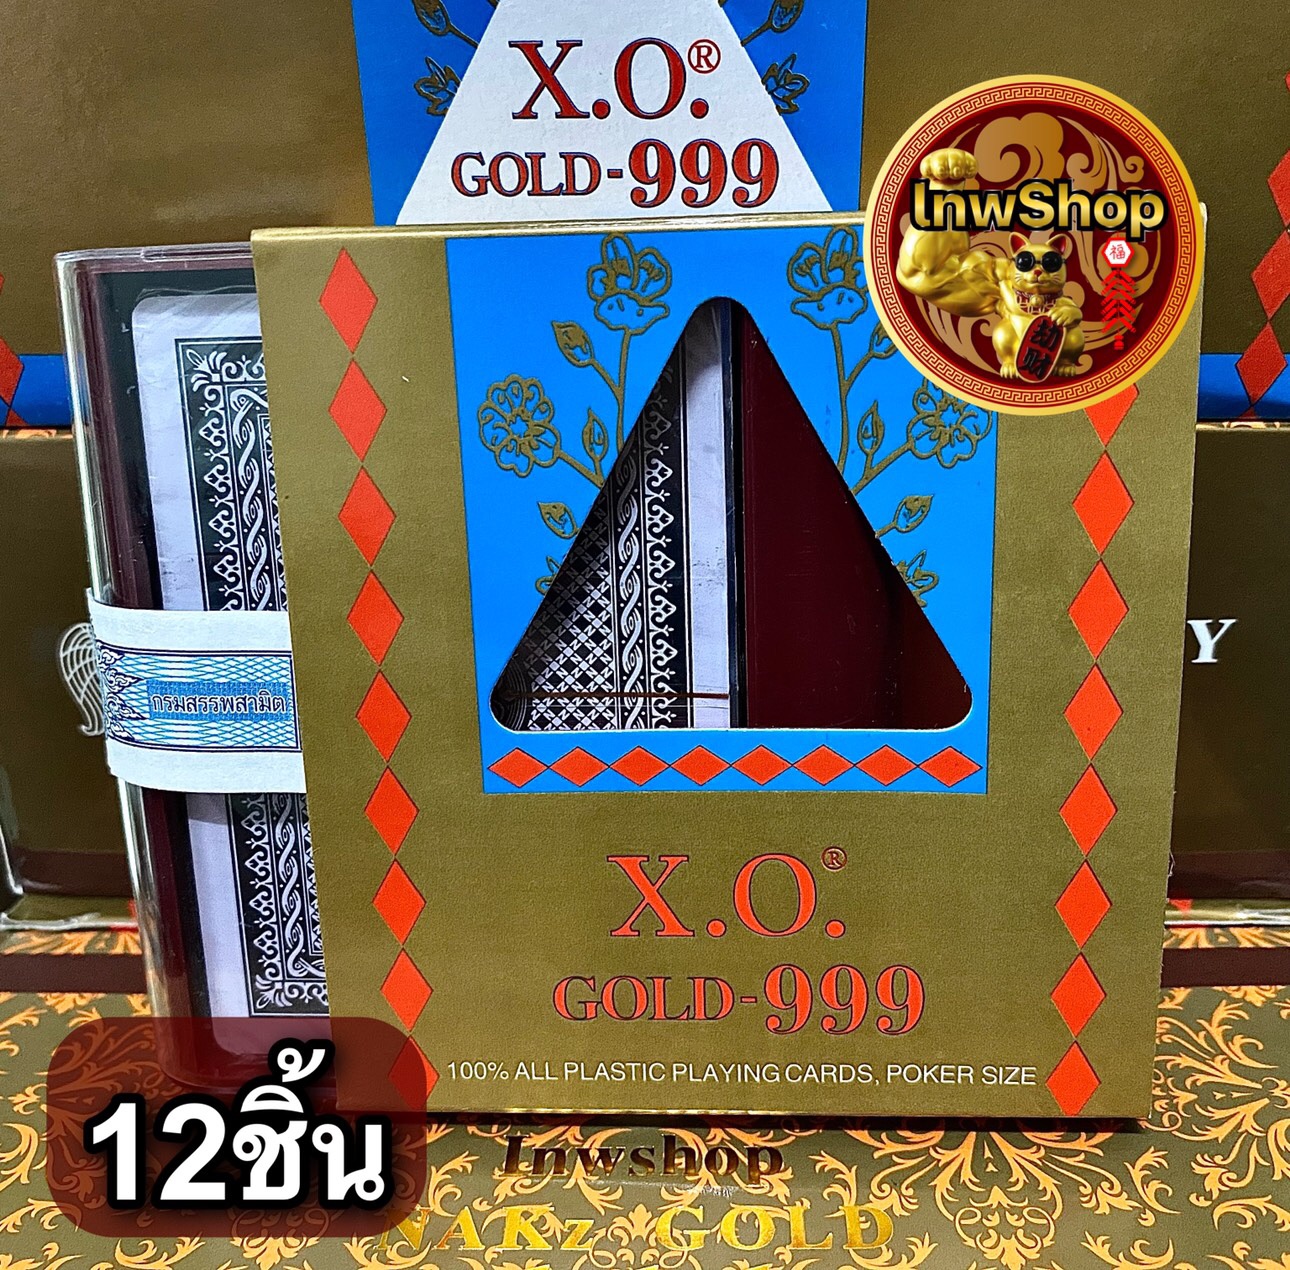 12 ชิ้น ไพ่ ตอง 999 พลาสติก ขอบทอง (ไพ่ตอง) ตองเก้า โป๊กเกอร์ ขนาดมาตรฐาน (Poker Card)